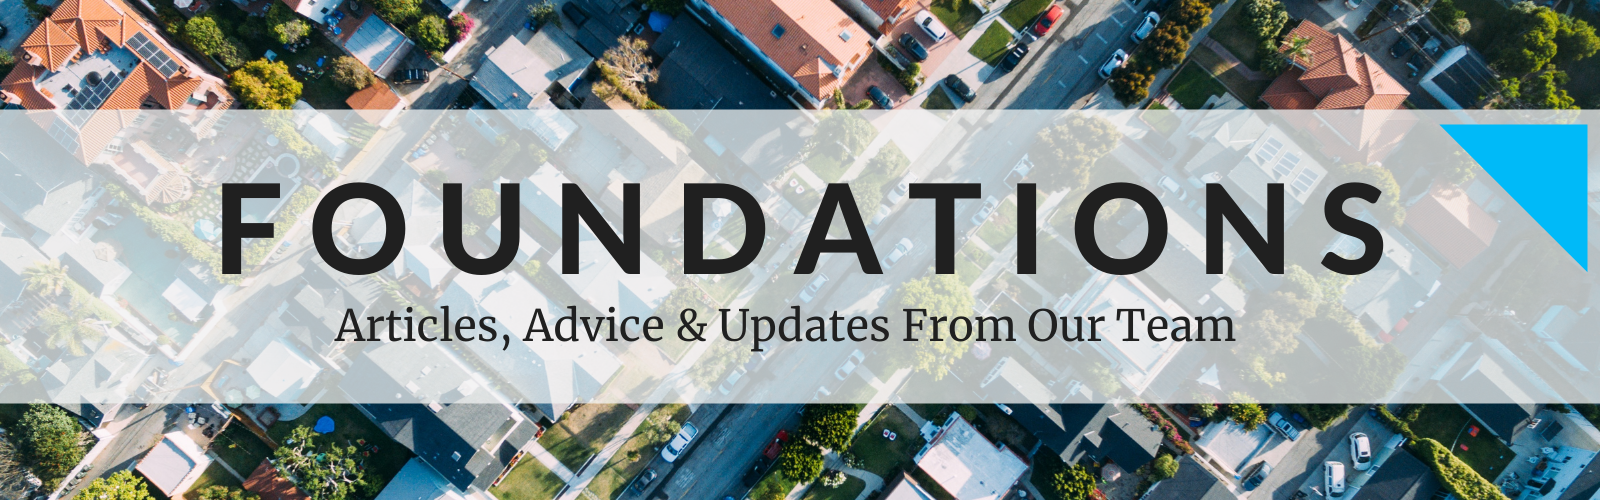 Foundations Blog Header